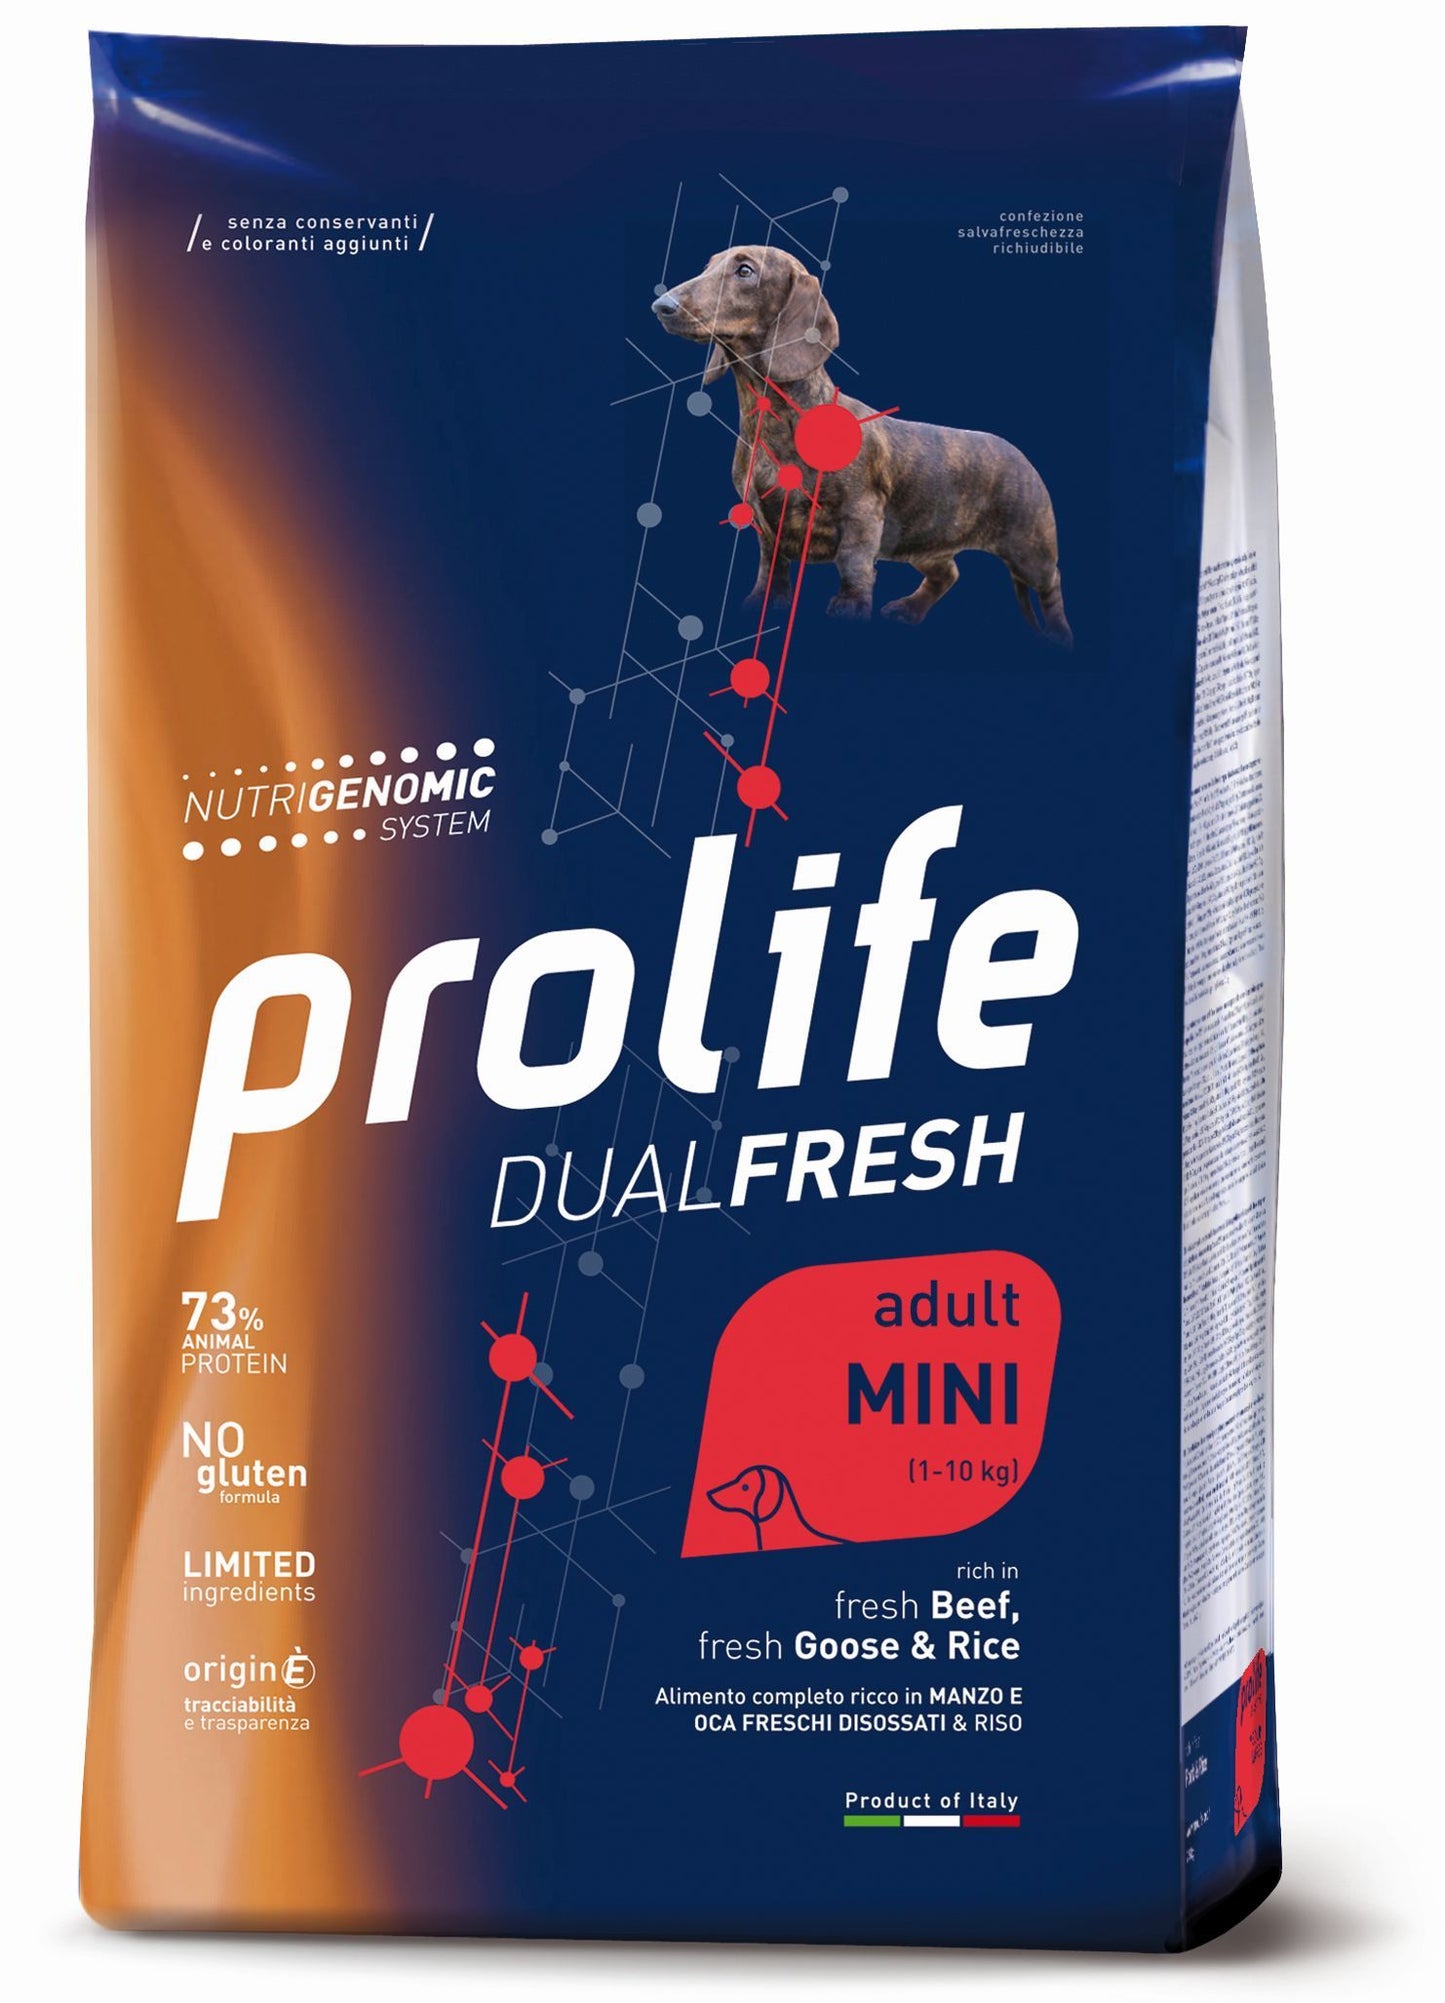 Prolife Dual Fresh - Crocchette per cani adulti di taglia piccola - Manzo e Oca freschi, riso - 2kg